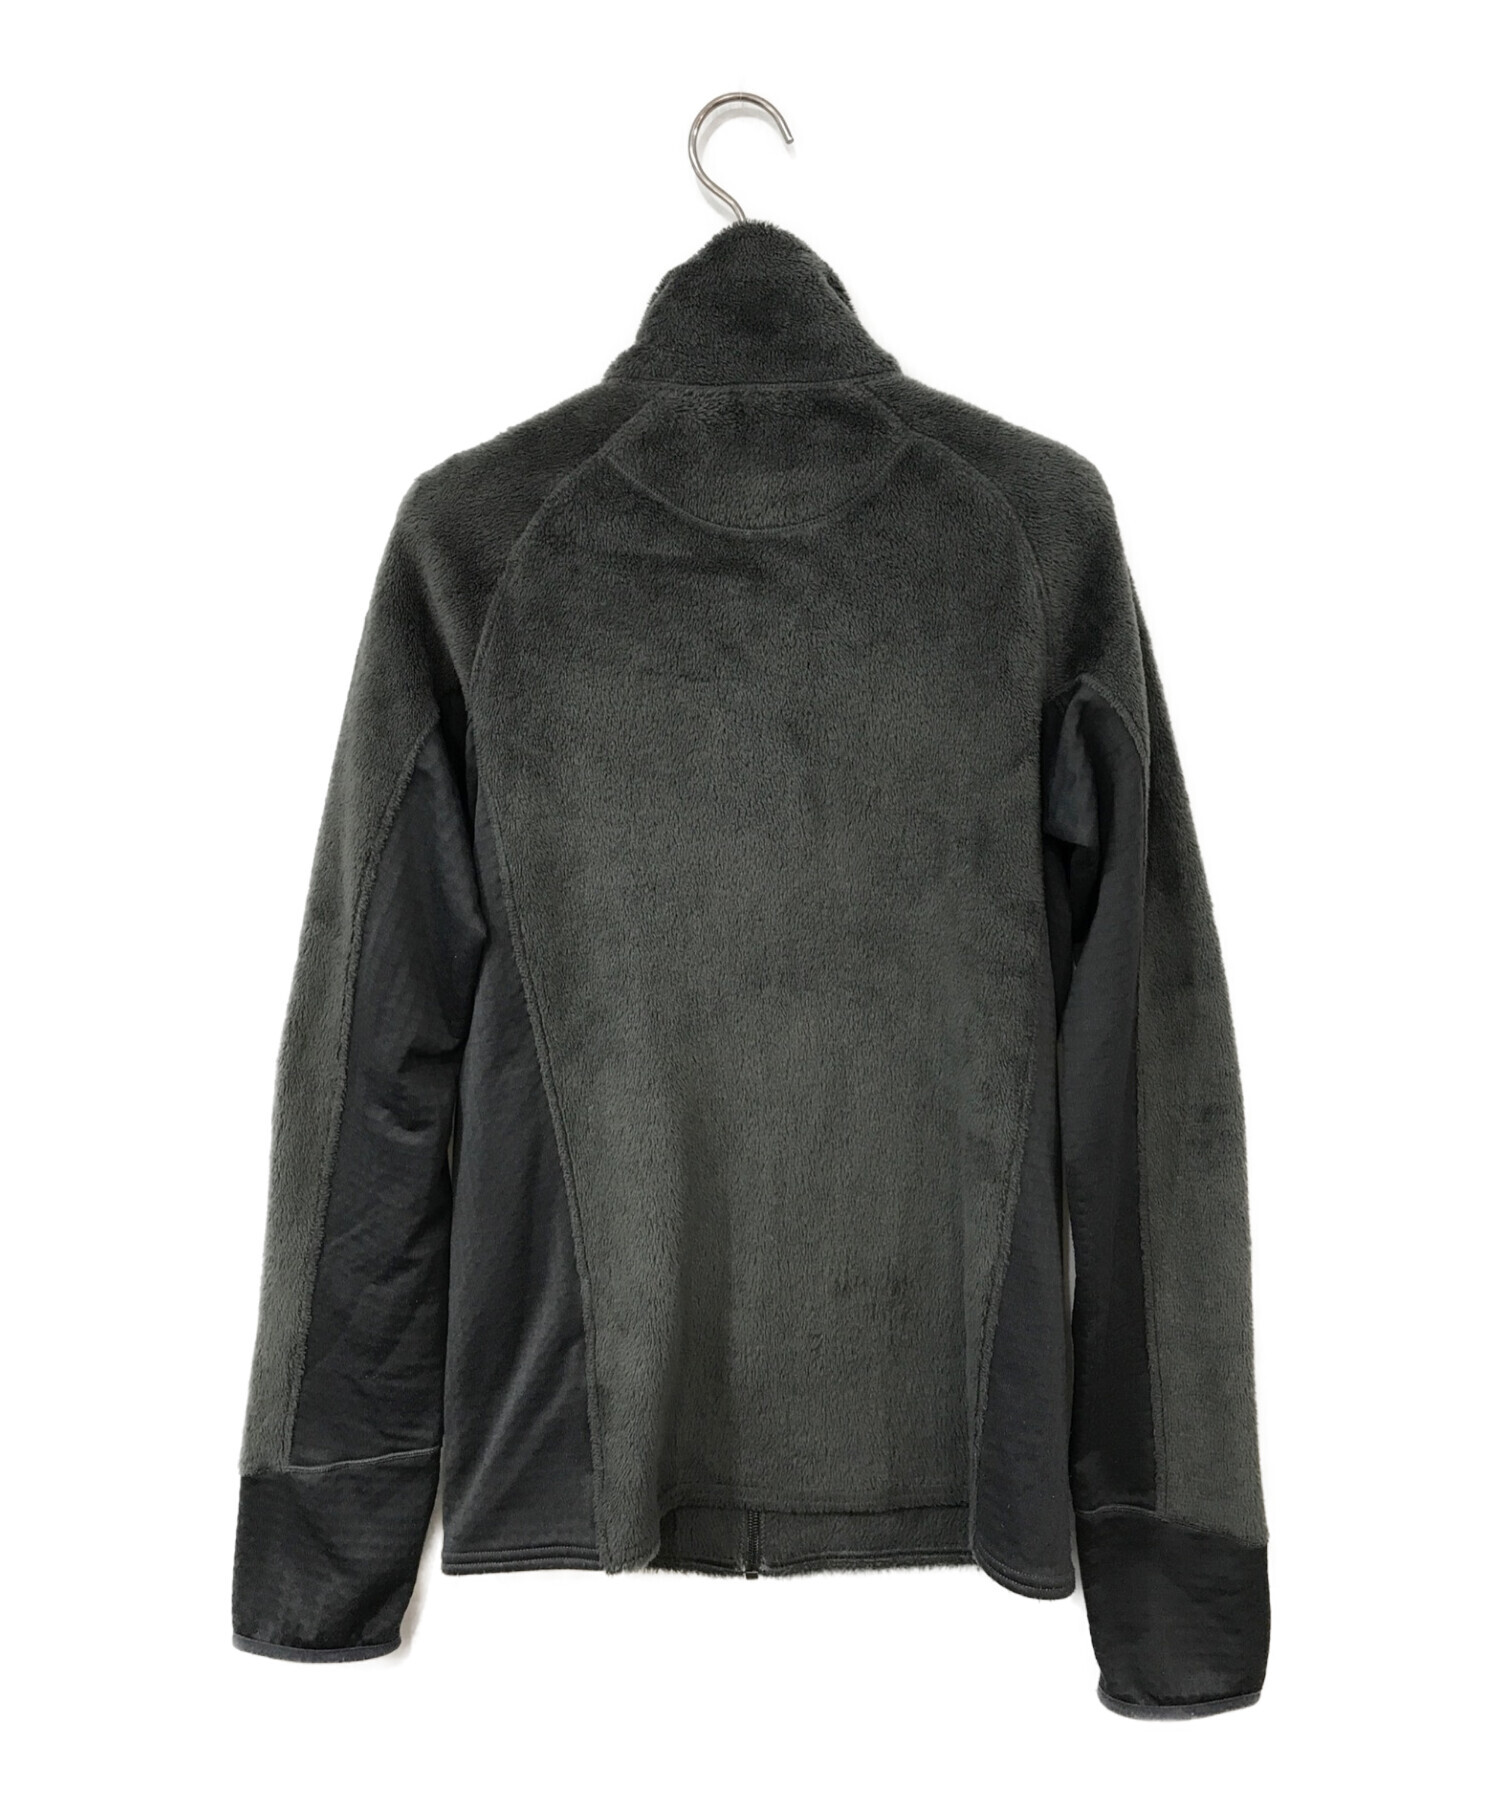 パタゴニアR2ジャケット 黒BLK Sサイズ